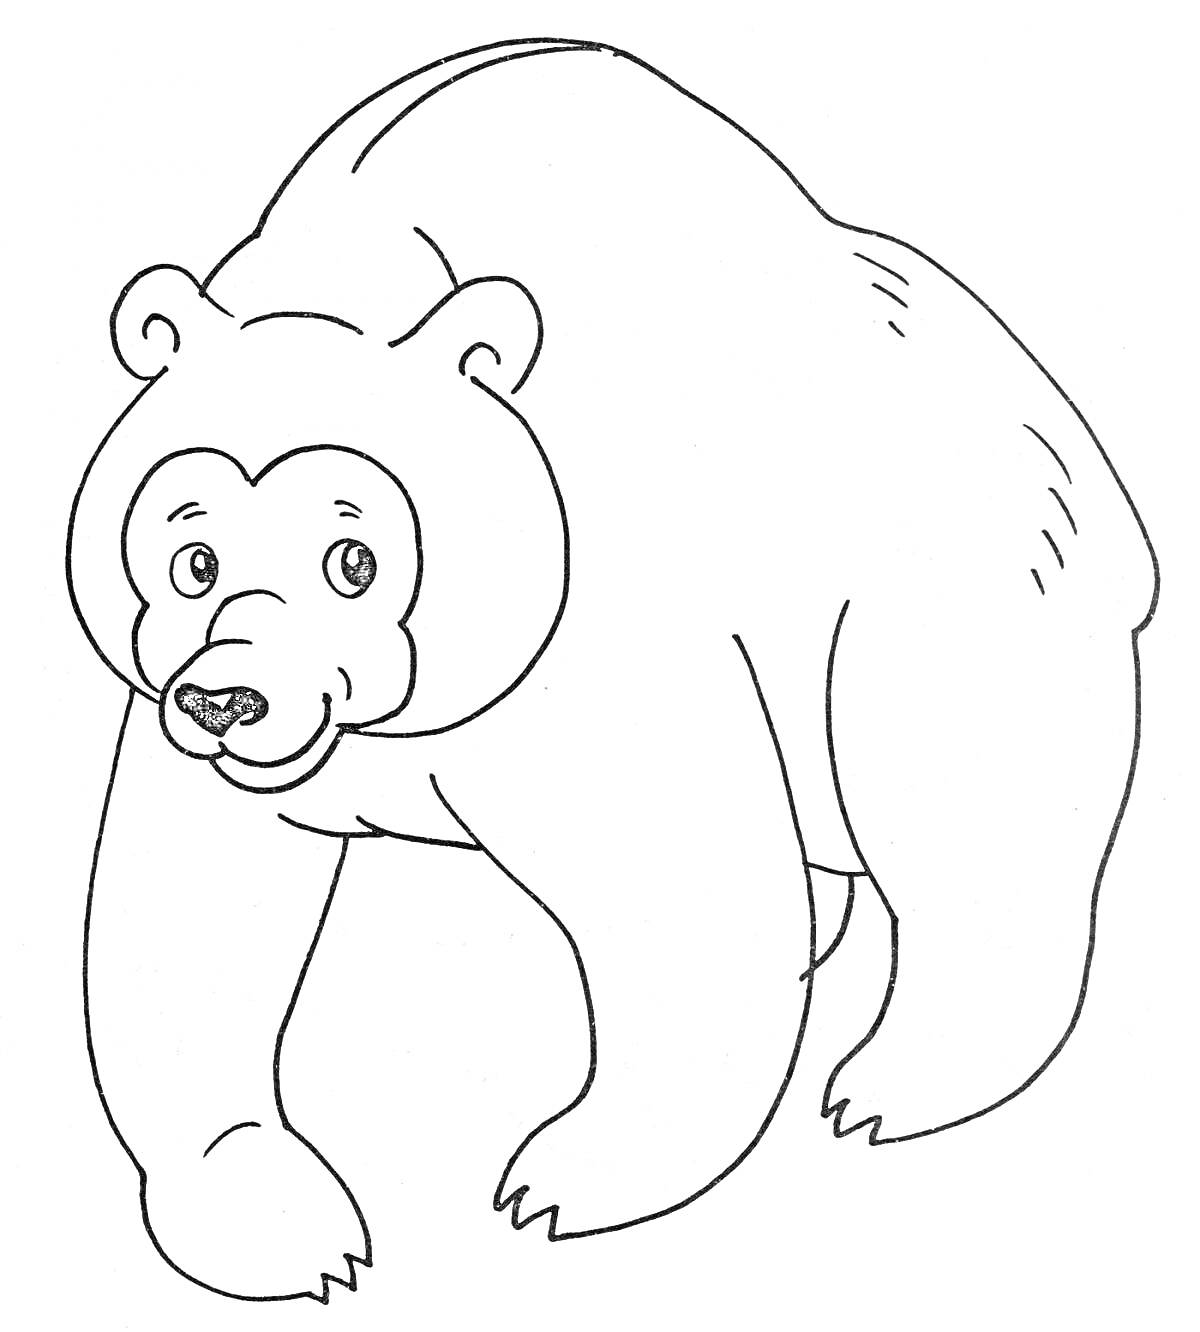 Раскраска Медведь в движении